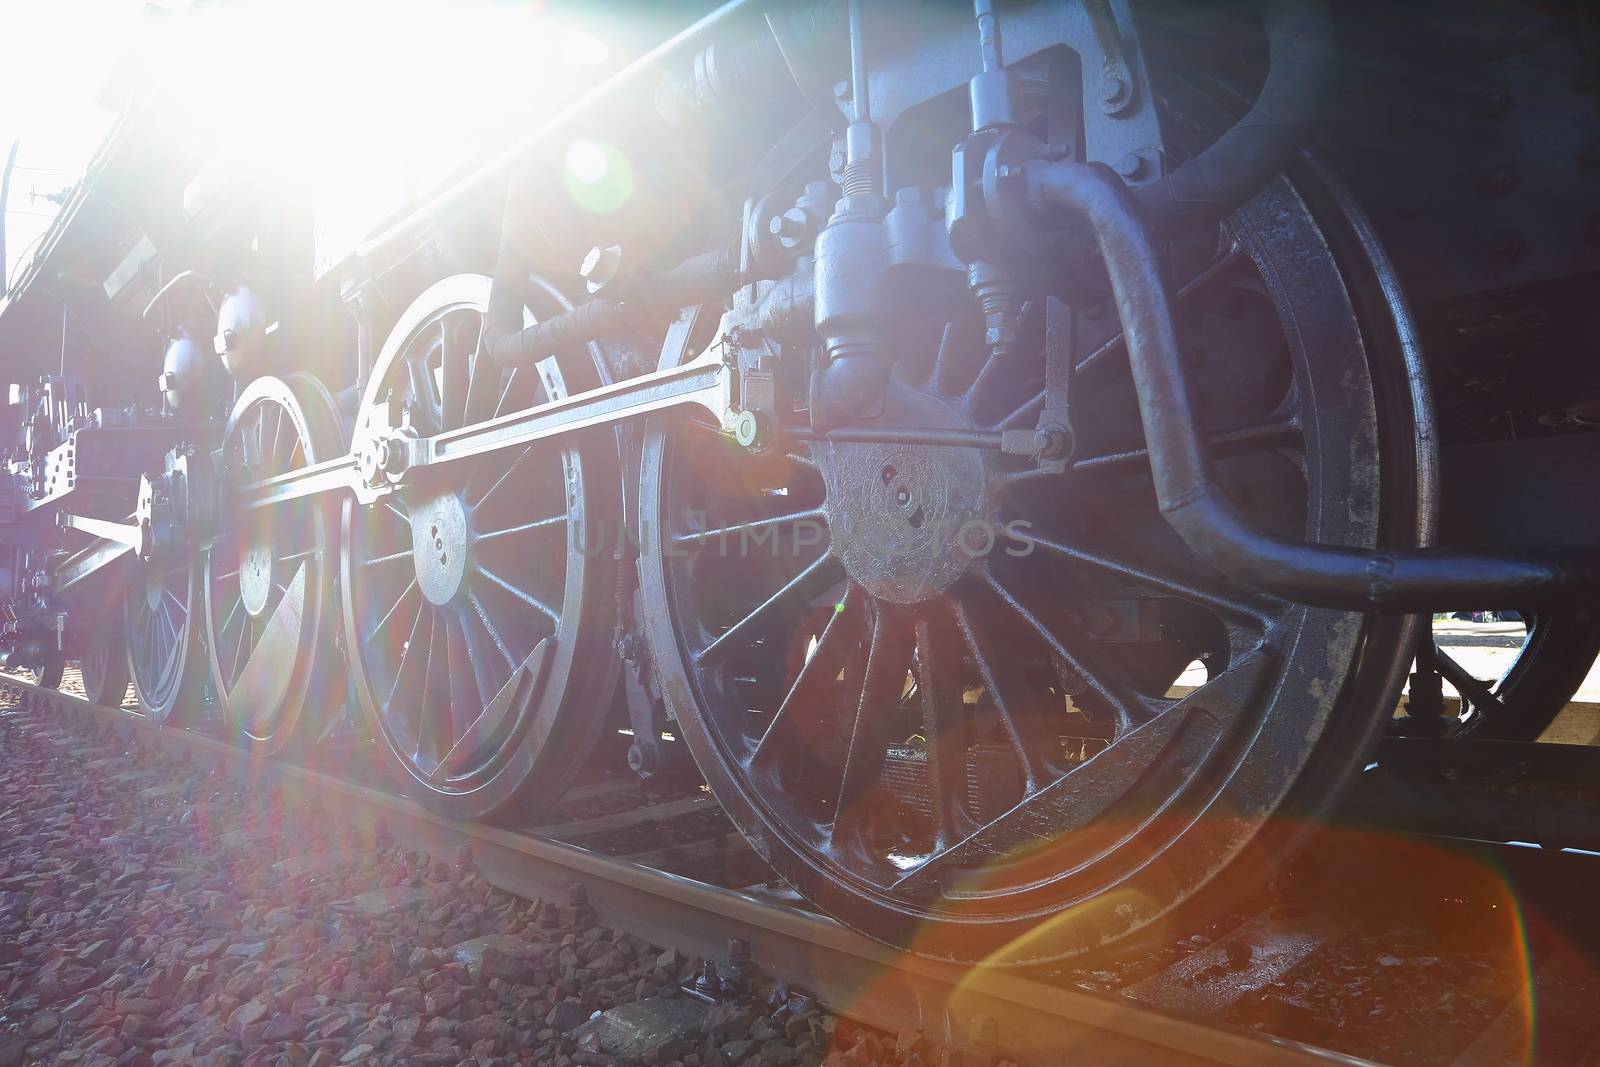 Steam Locomotive Sun Flare by Gudella